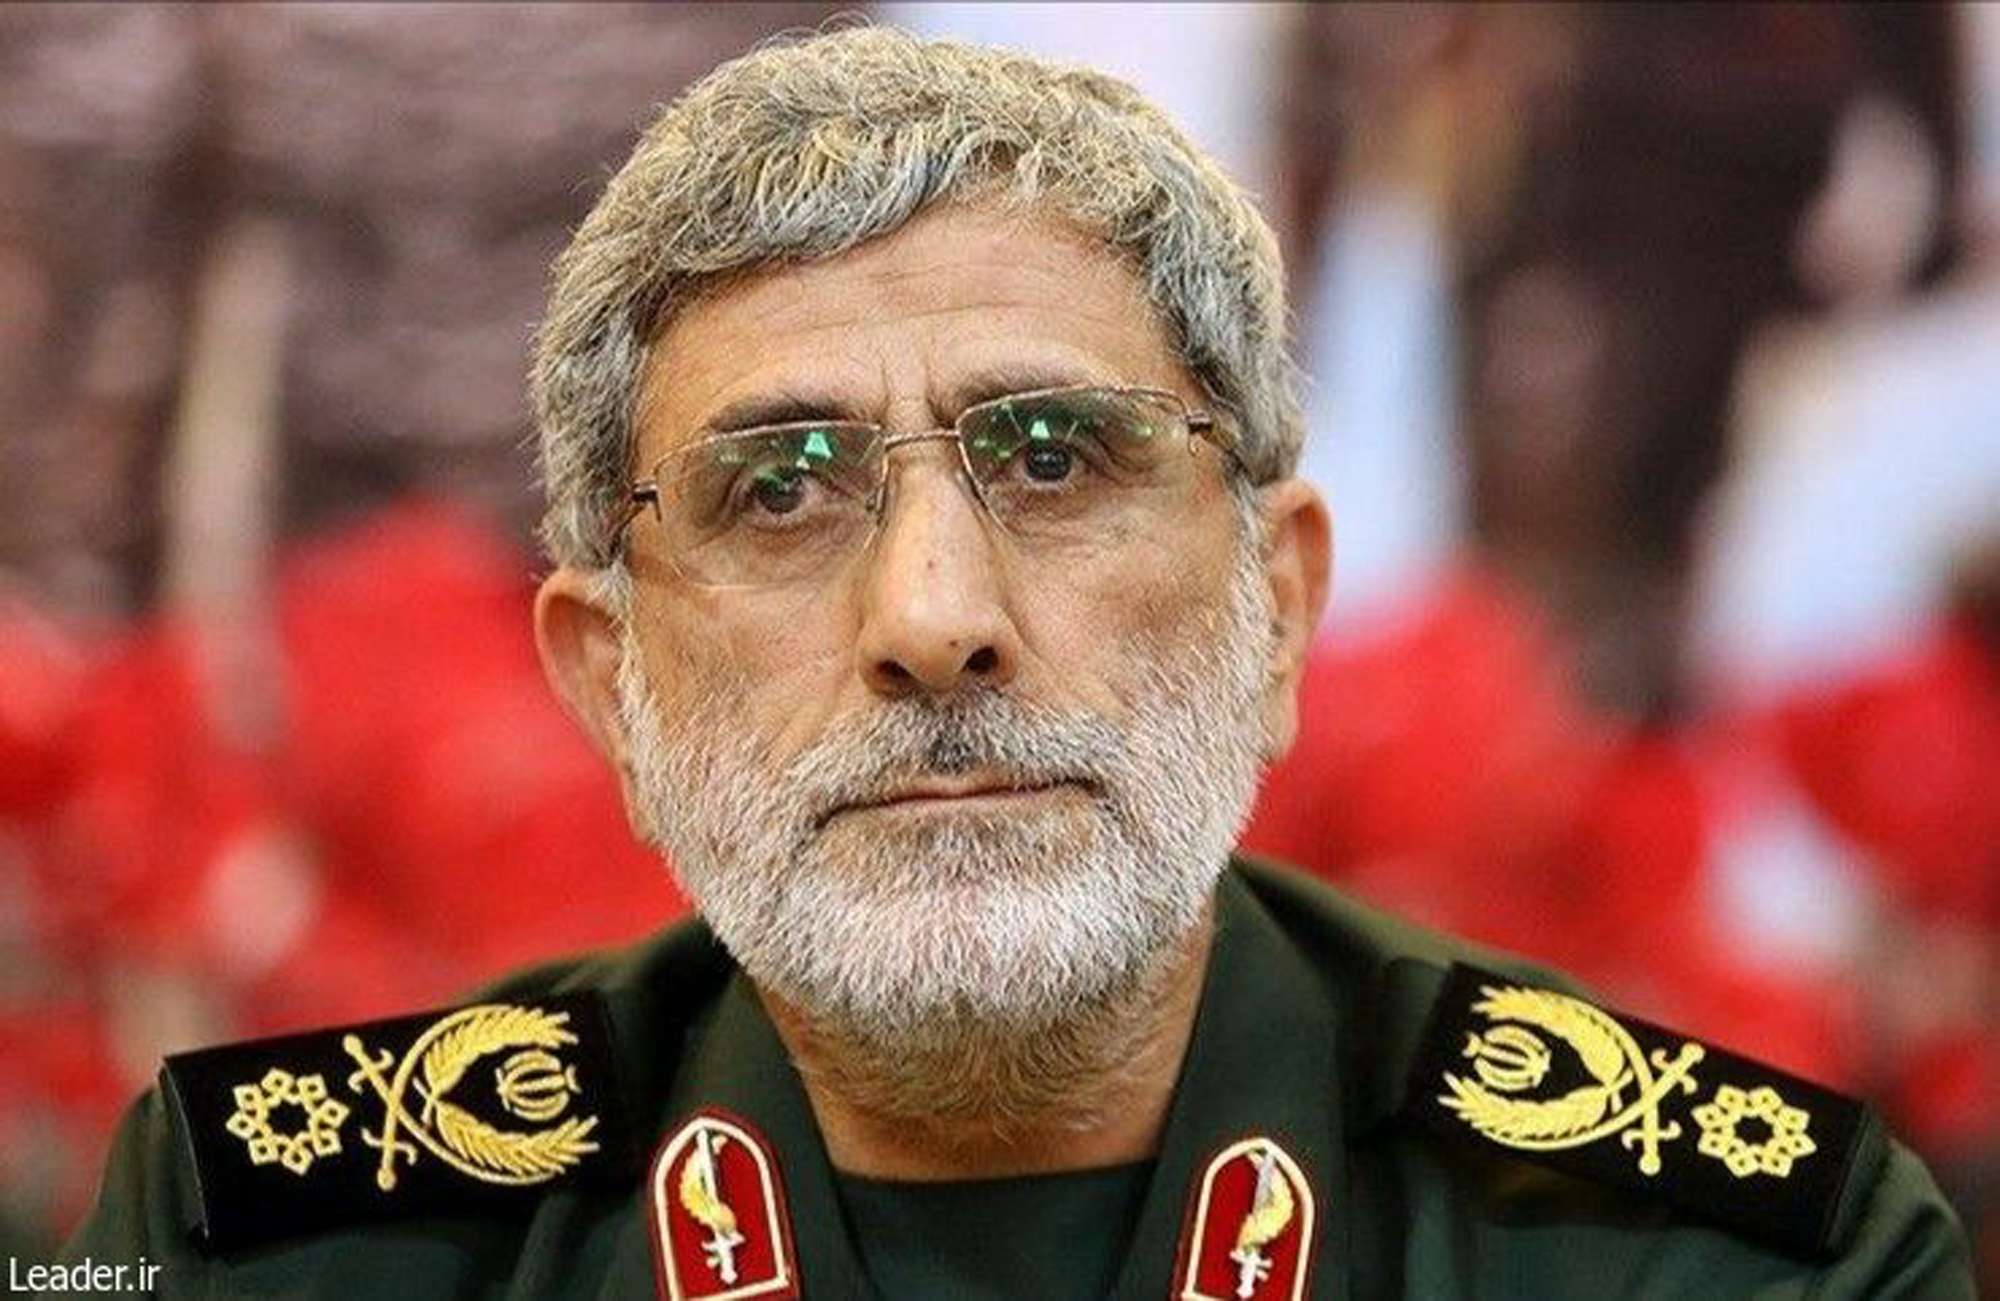 إسماعيل قآني القائد الجديد لـ'فيلق القدس' بالحرس الثوري الإيراني